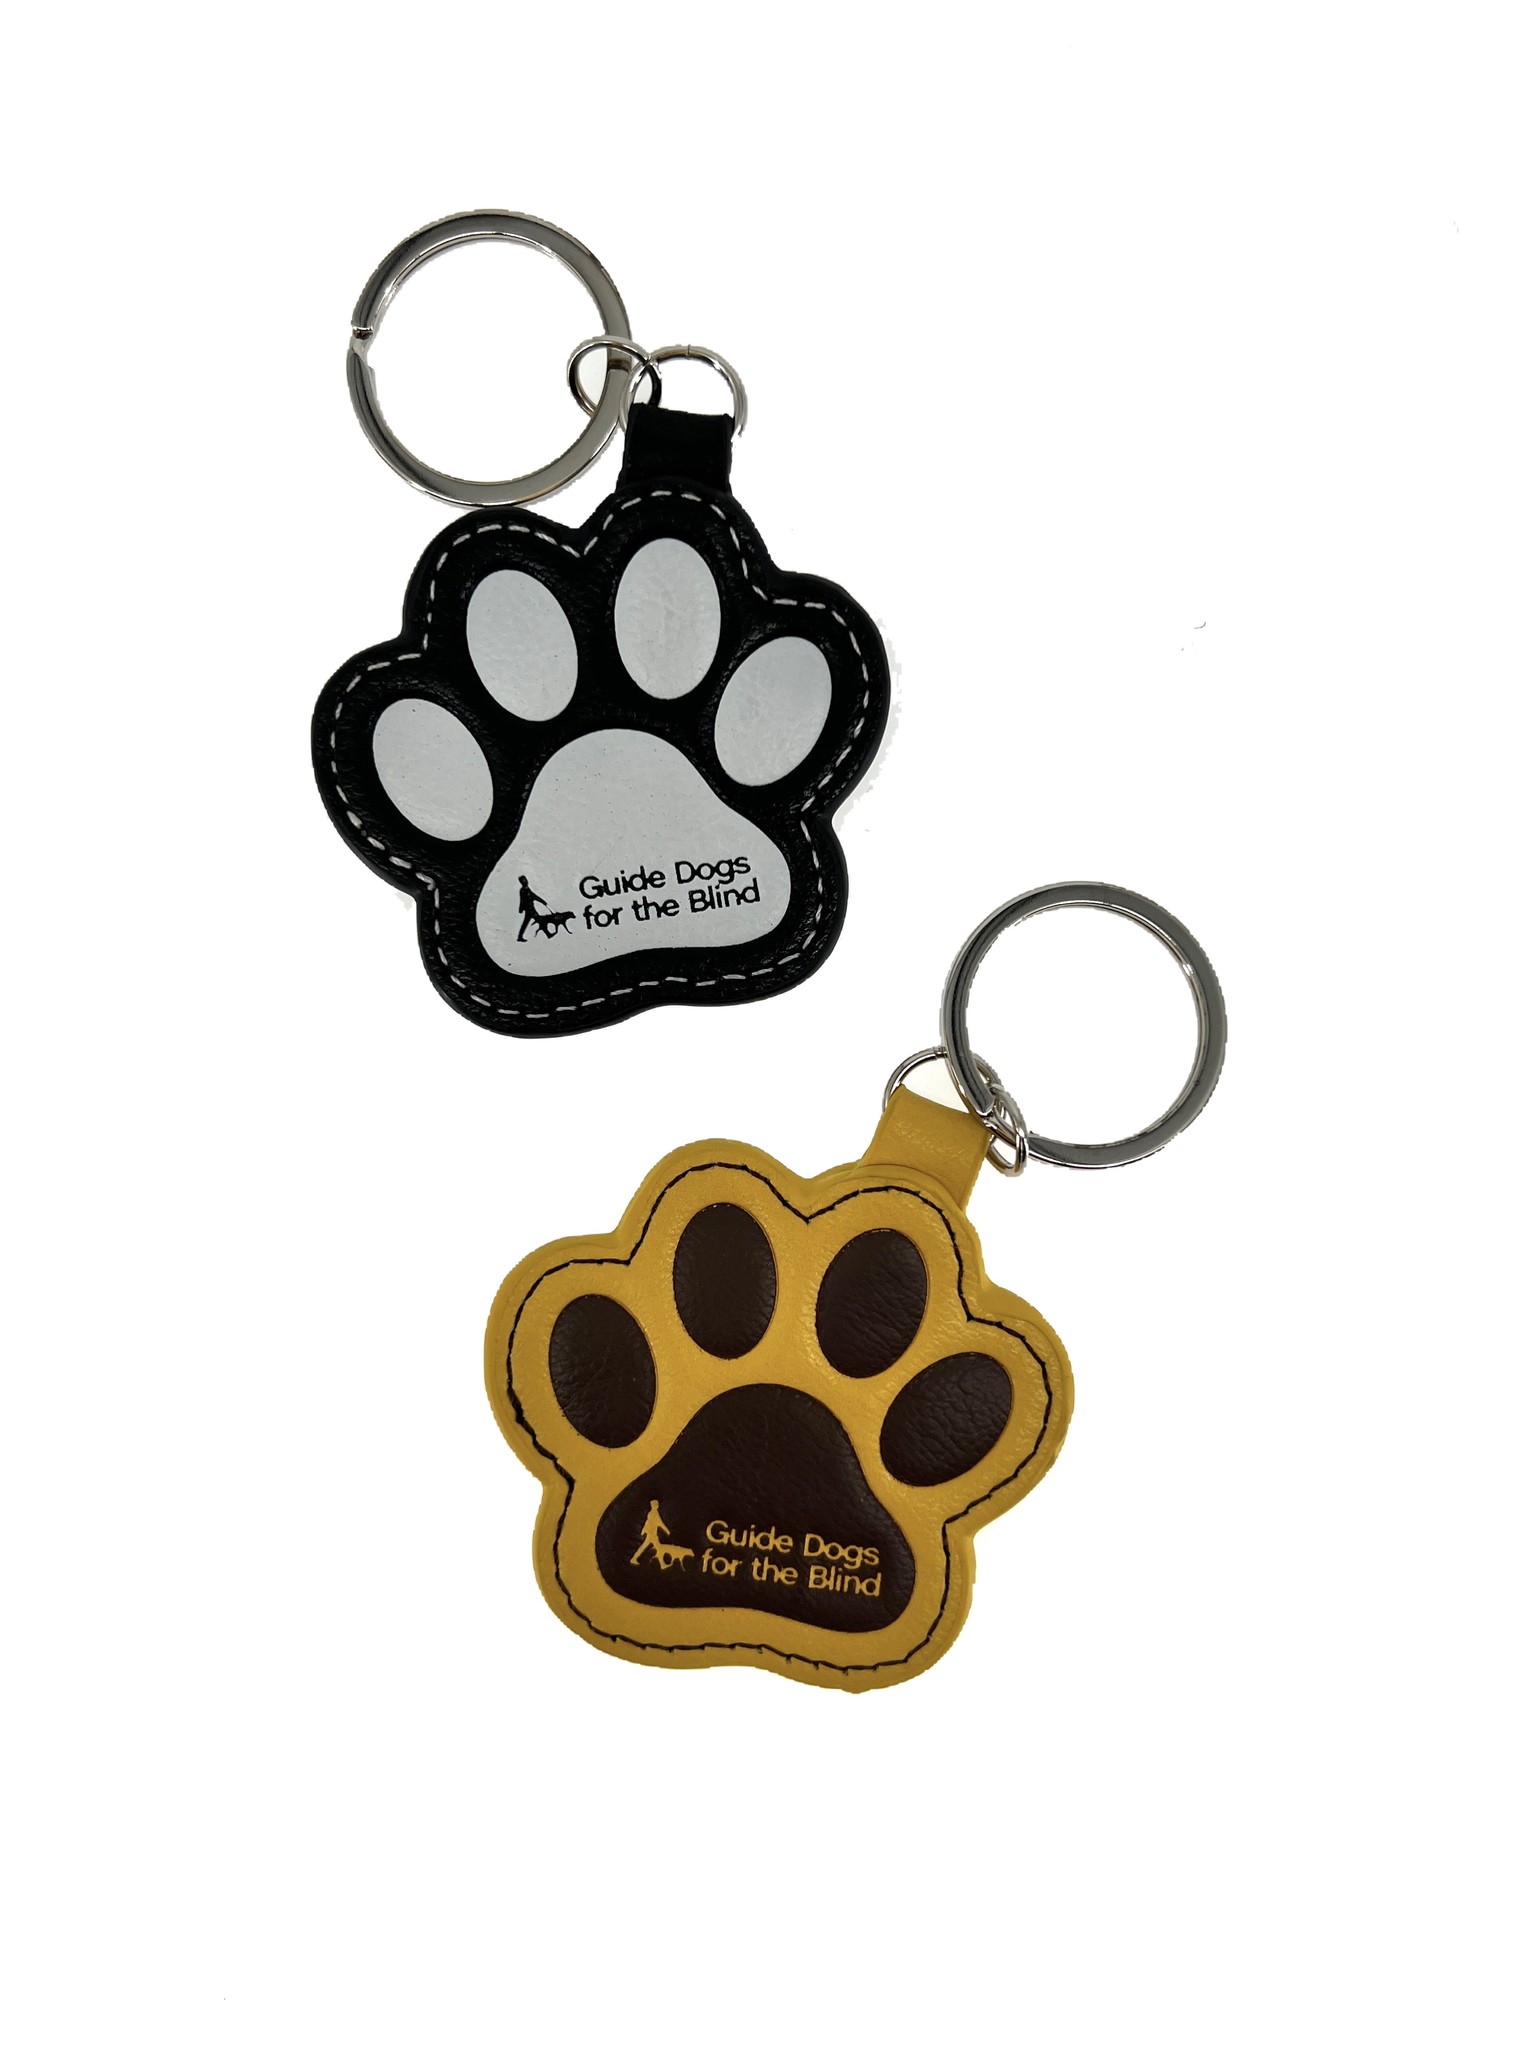 Keychain holder, Display- keychain holder stand- Dog paw designs